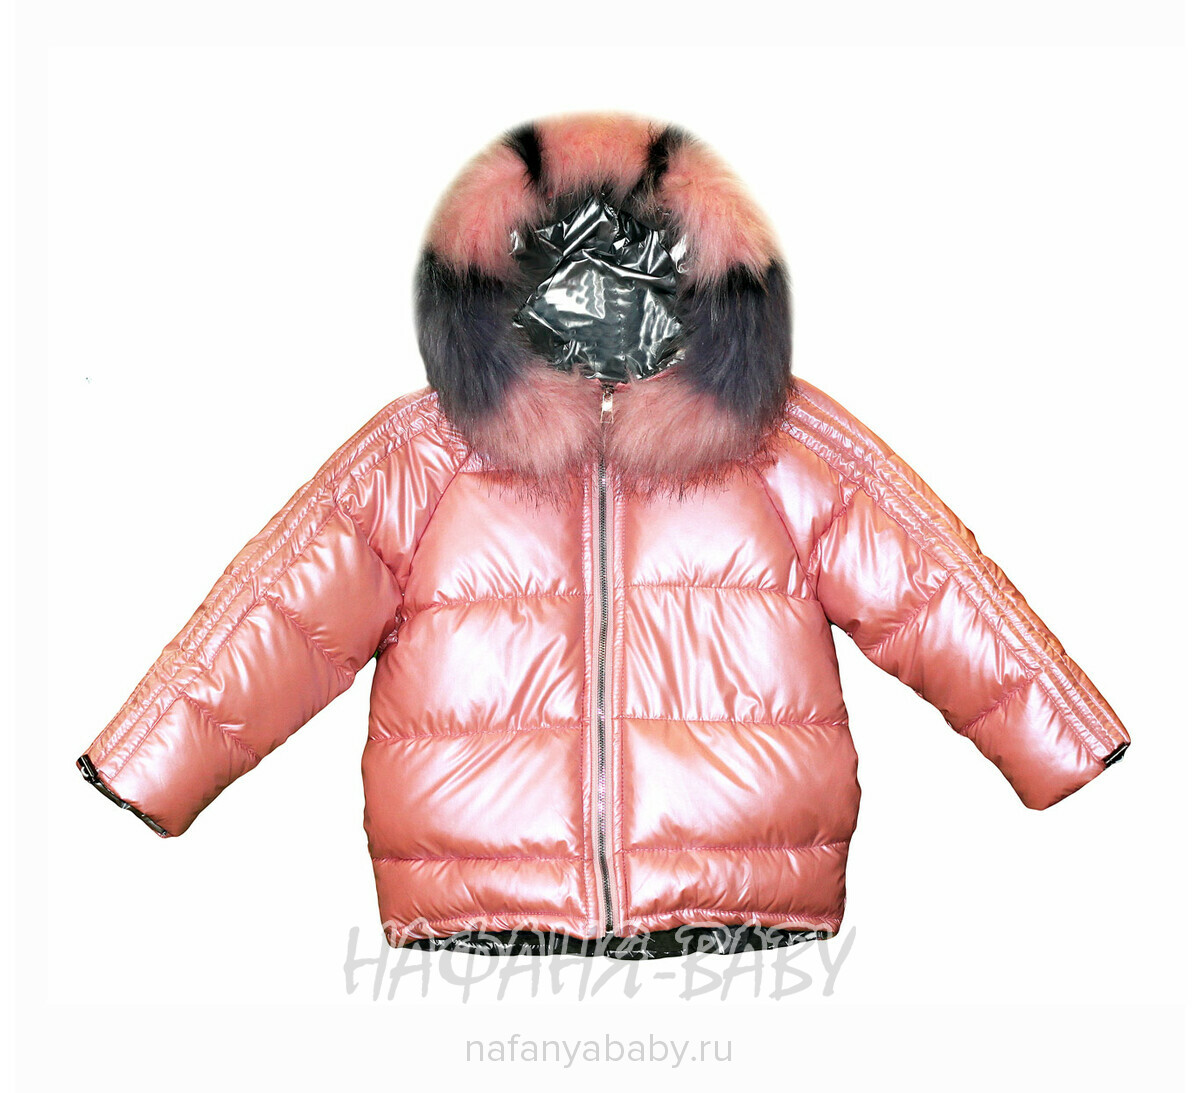 Детская зимняя куртка для девочки SHTN, купить в интернет магазине Нафаня. арт: 3214.